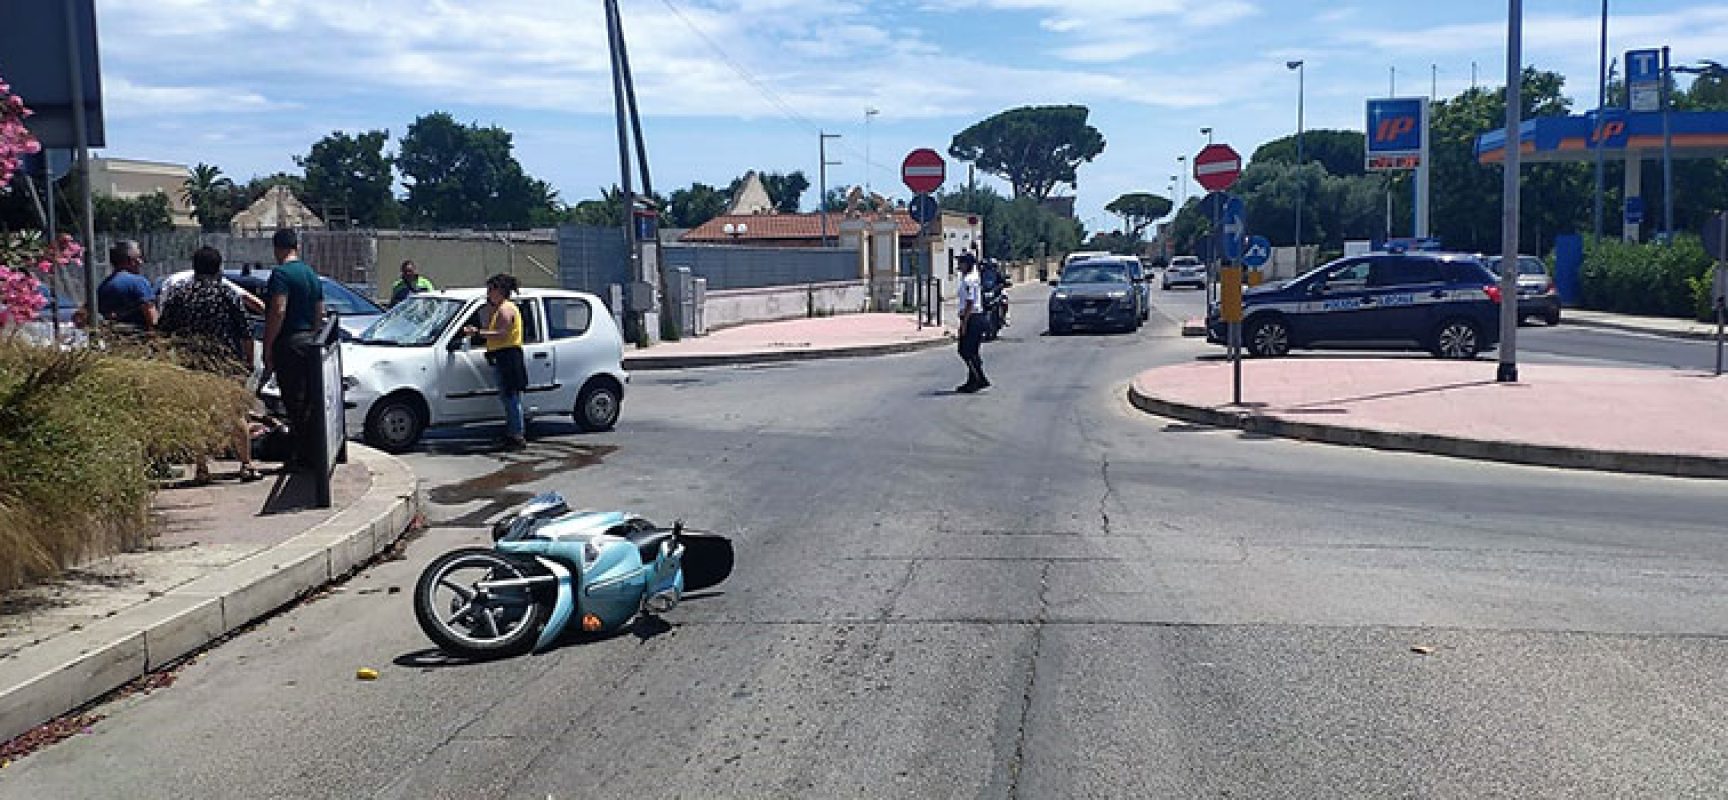 Incidente in via Imbriani, ferito giovane biscegliese a bordo di uno scooter